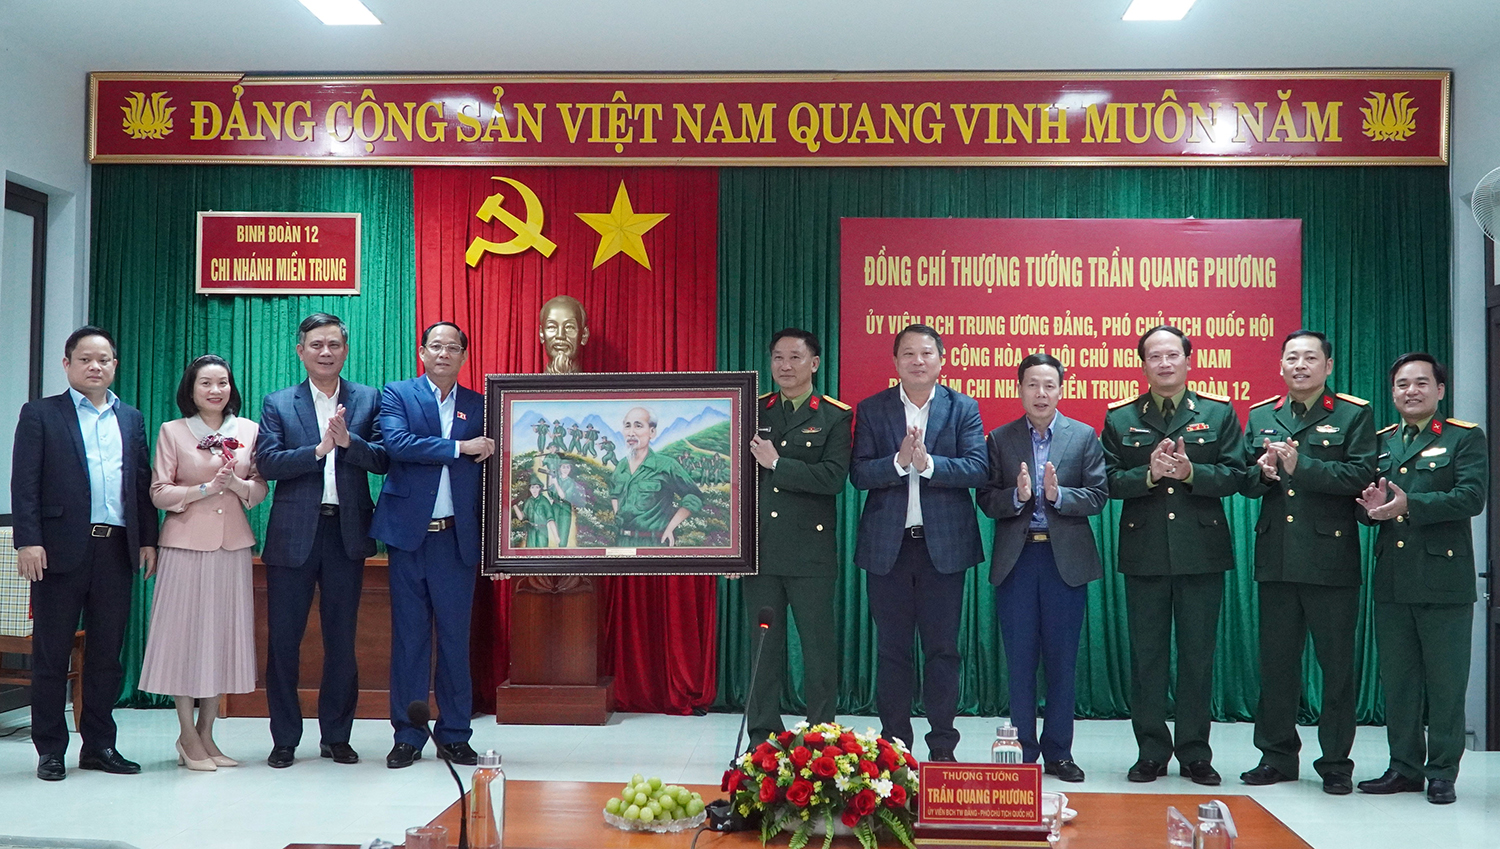 Đồng chí Thượng tướng, Phó Chủ tịch Quốc hội Trần Quang Phương và các đồng chí lãnh đạo tỉnh tặng quà, chụp ảnh lưu niệm với cán bộ, chiên sĩ Binh đoàn 12